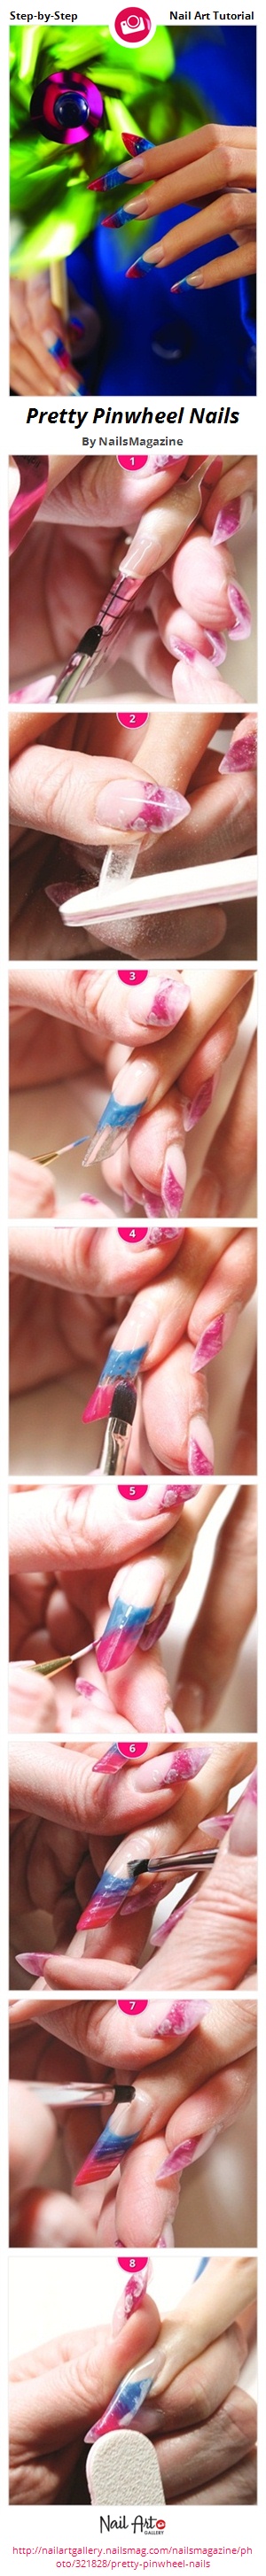 Pretty Pinwheel Nails - Nail Art Gallery